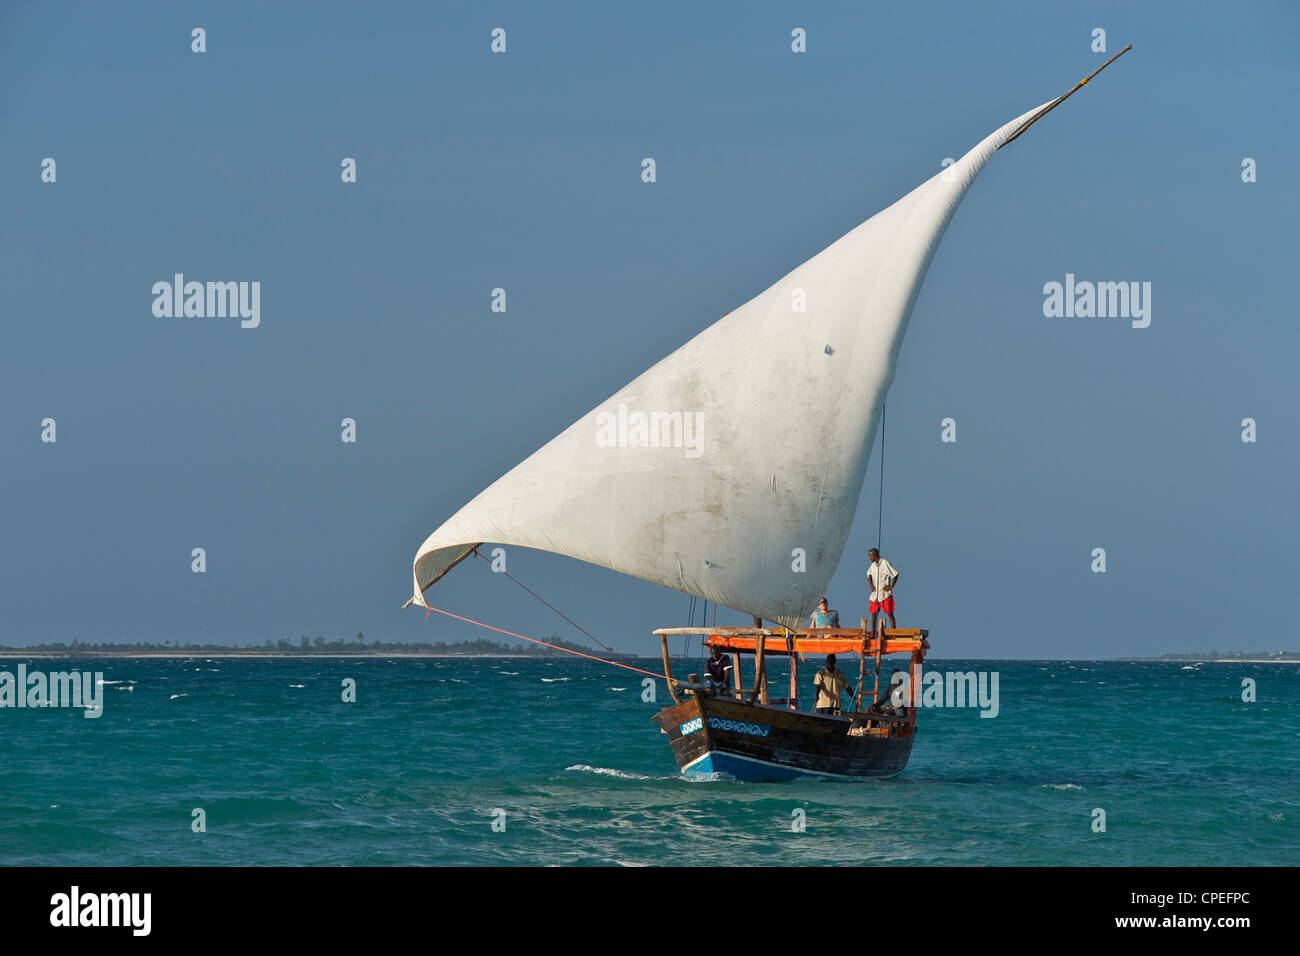 Voile dhaw de l'archipel des Quirimbas au large de la côte nord du Mozambique. Banque D'Images